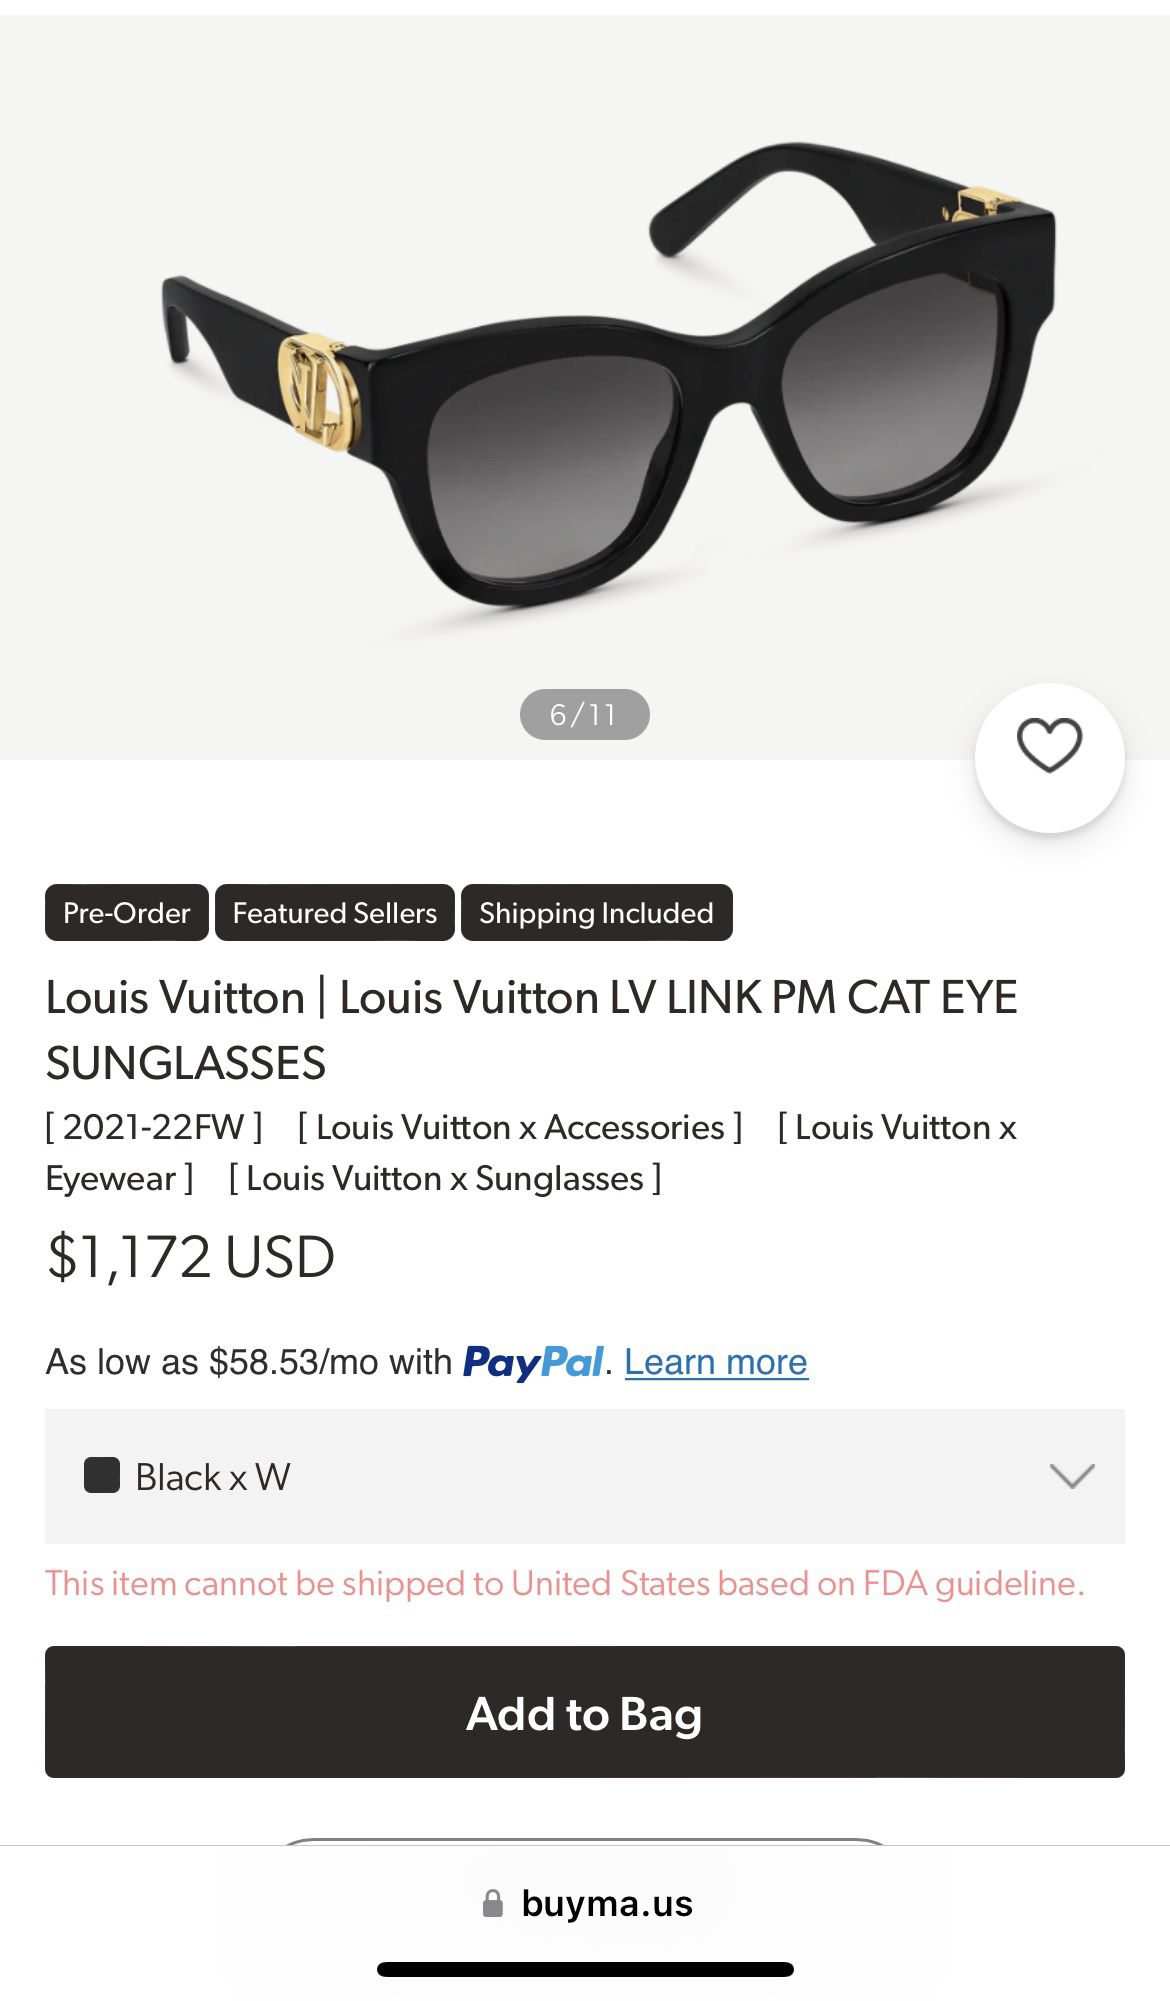 Louis Vuitton  Louis Vuitton LV LINK PM CAT EYE SUNGLASSES for